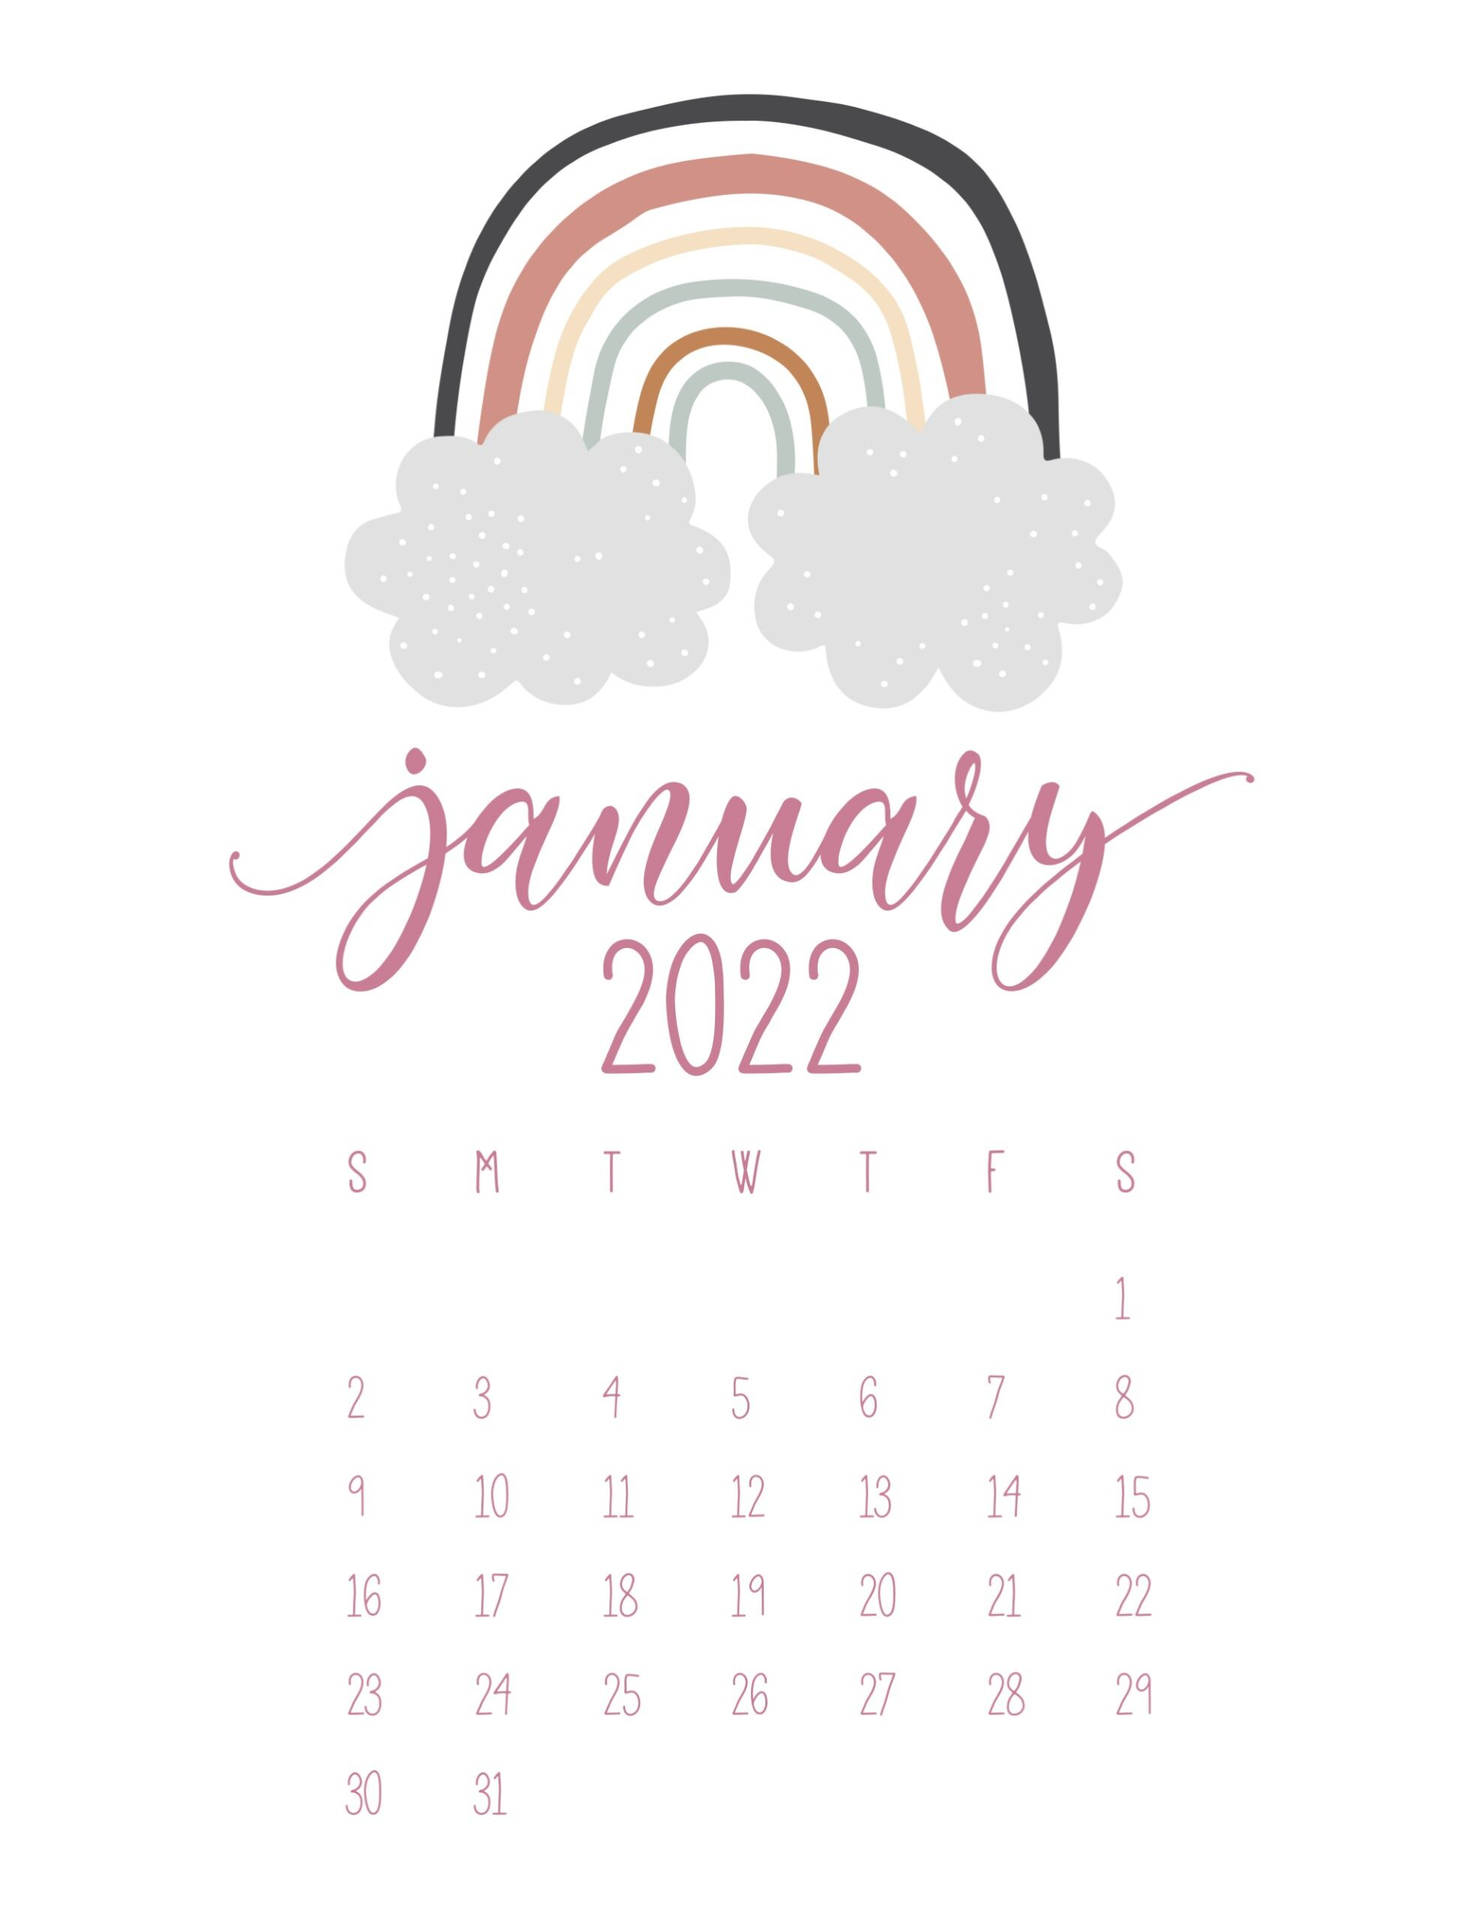 January 2022 Rainbow Calendar Background